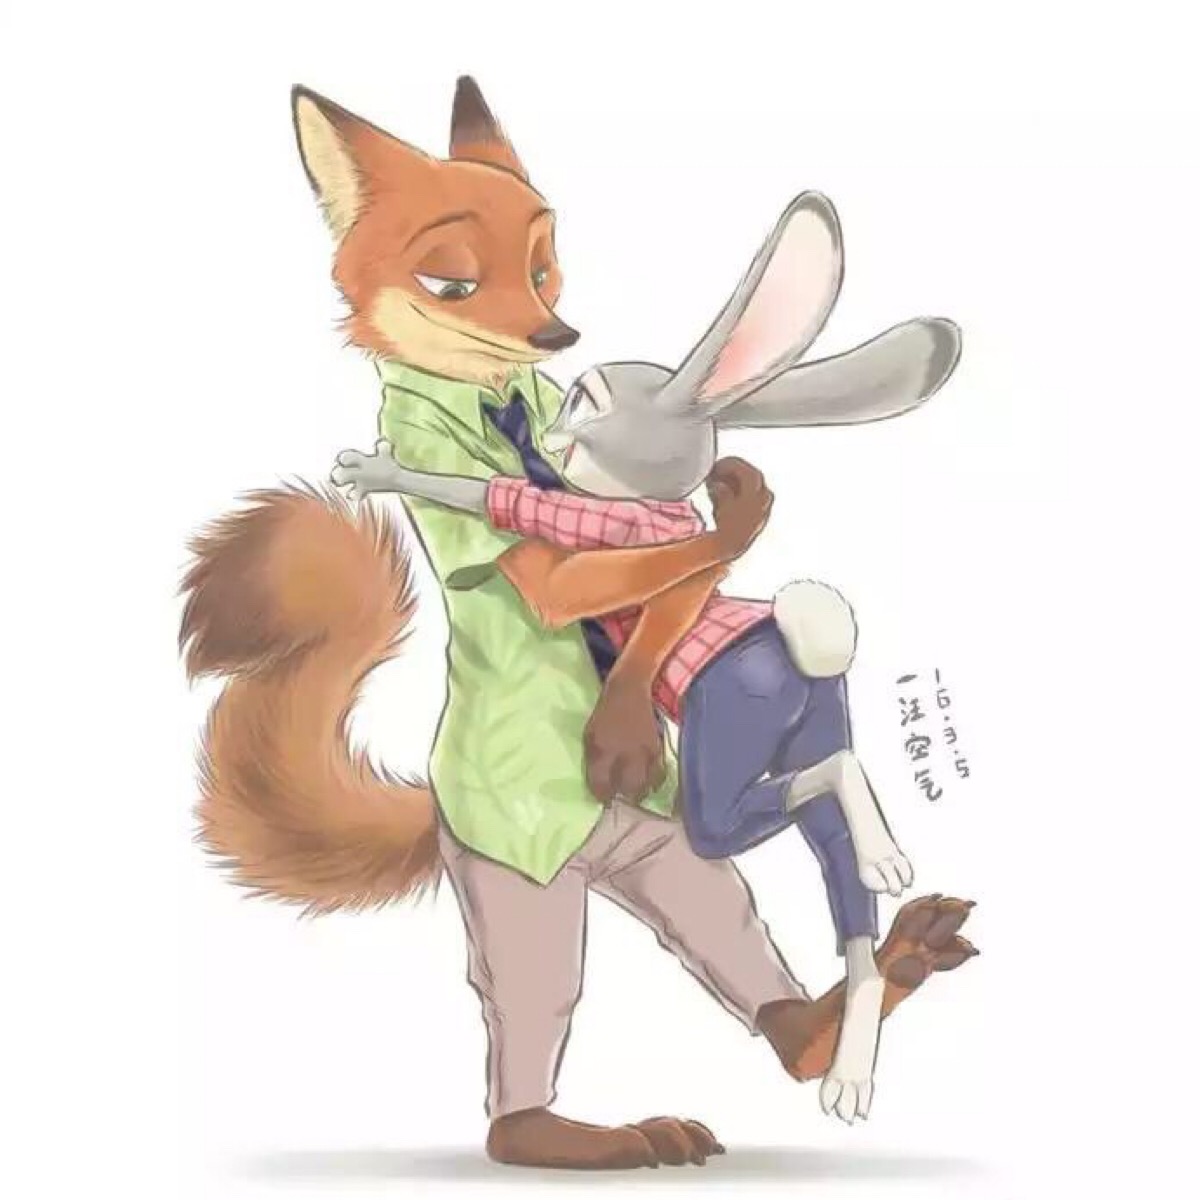 狐狸兔子情侣头像一对图片